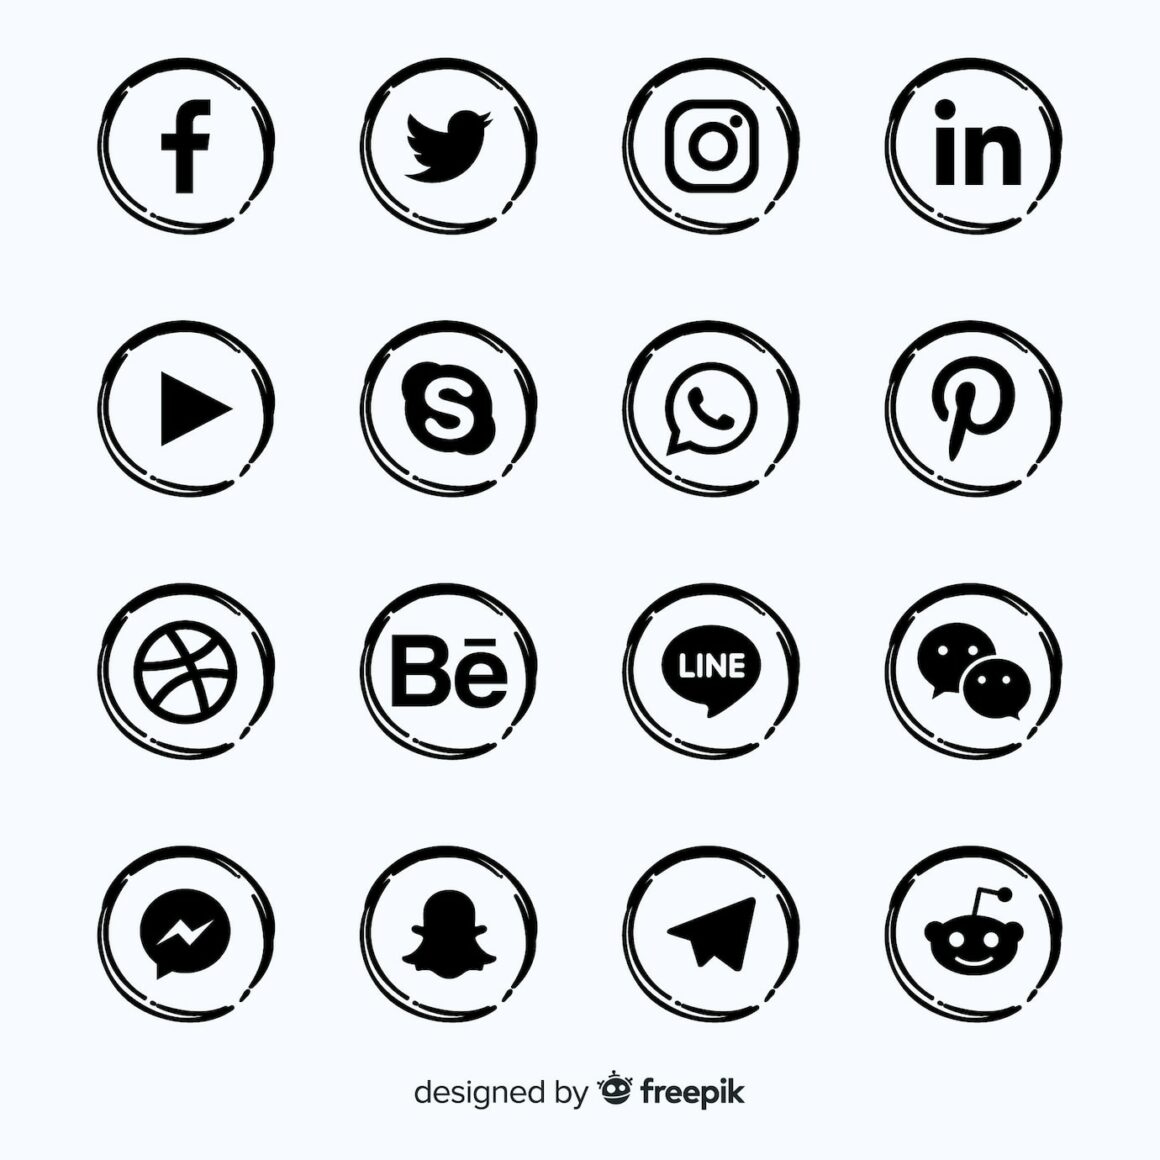 Free social media icon sets